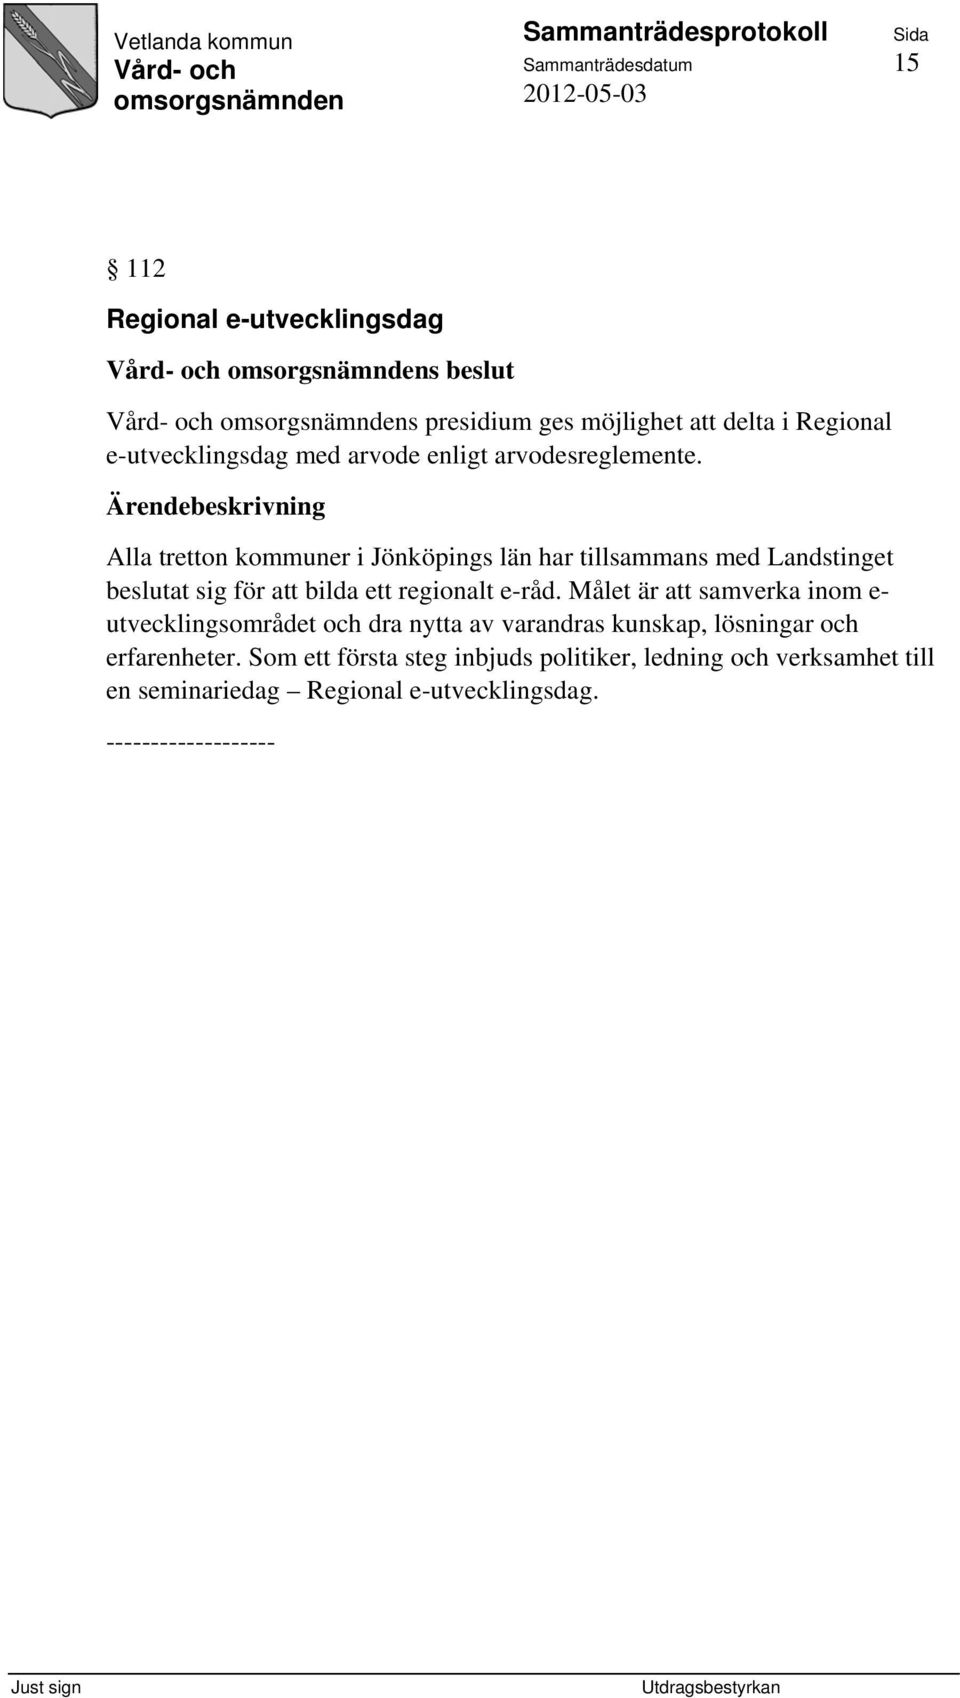 Alla tretton kommuner i Jönköpings län har tillsammans med Landstinget beslutat sig för att bilda ett regionalt e-råd.